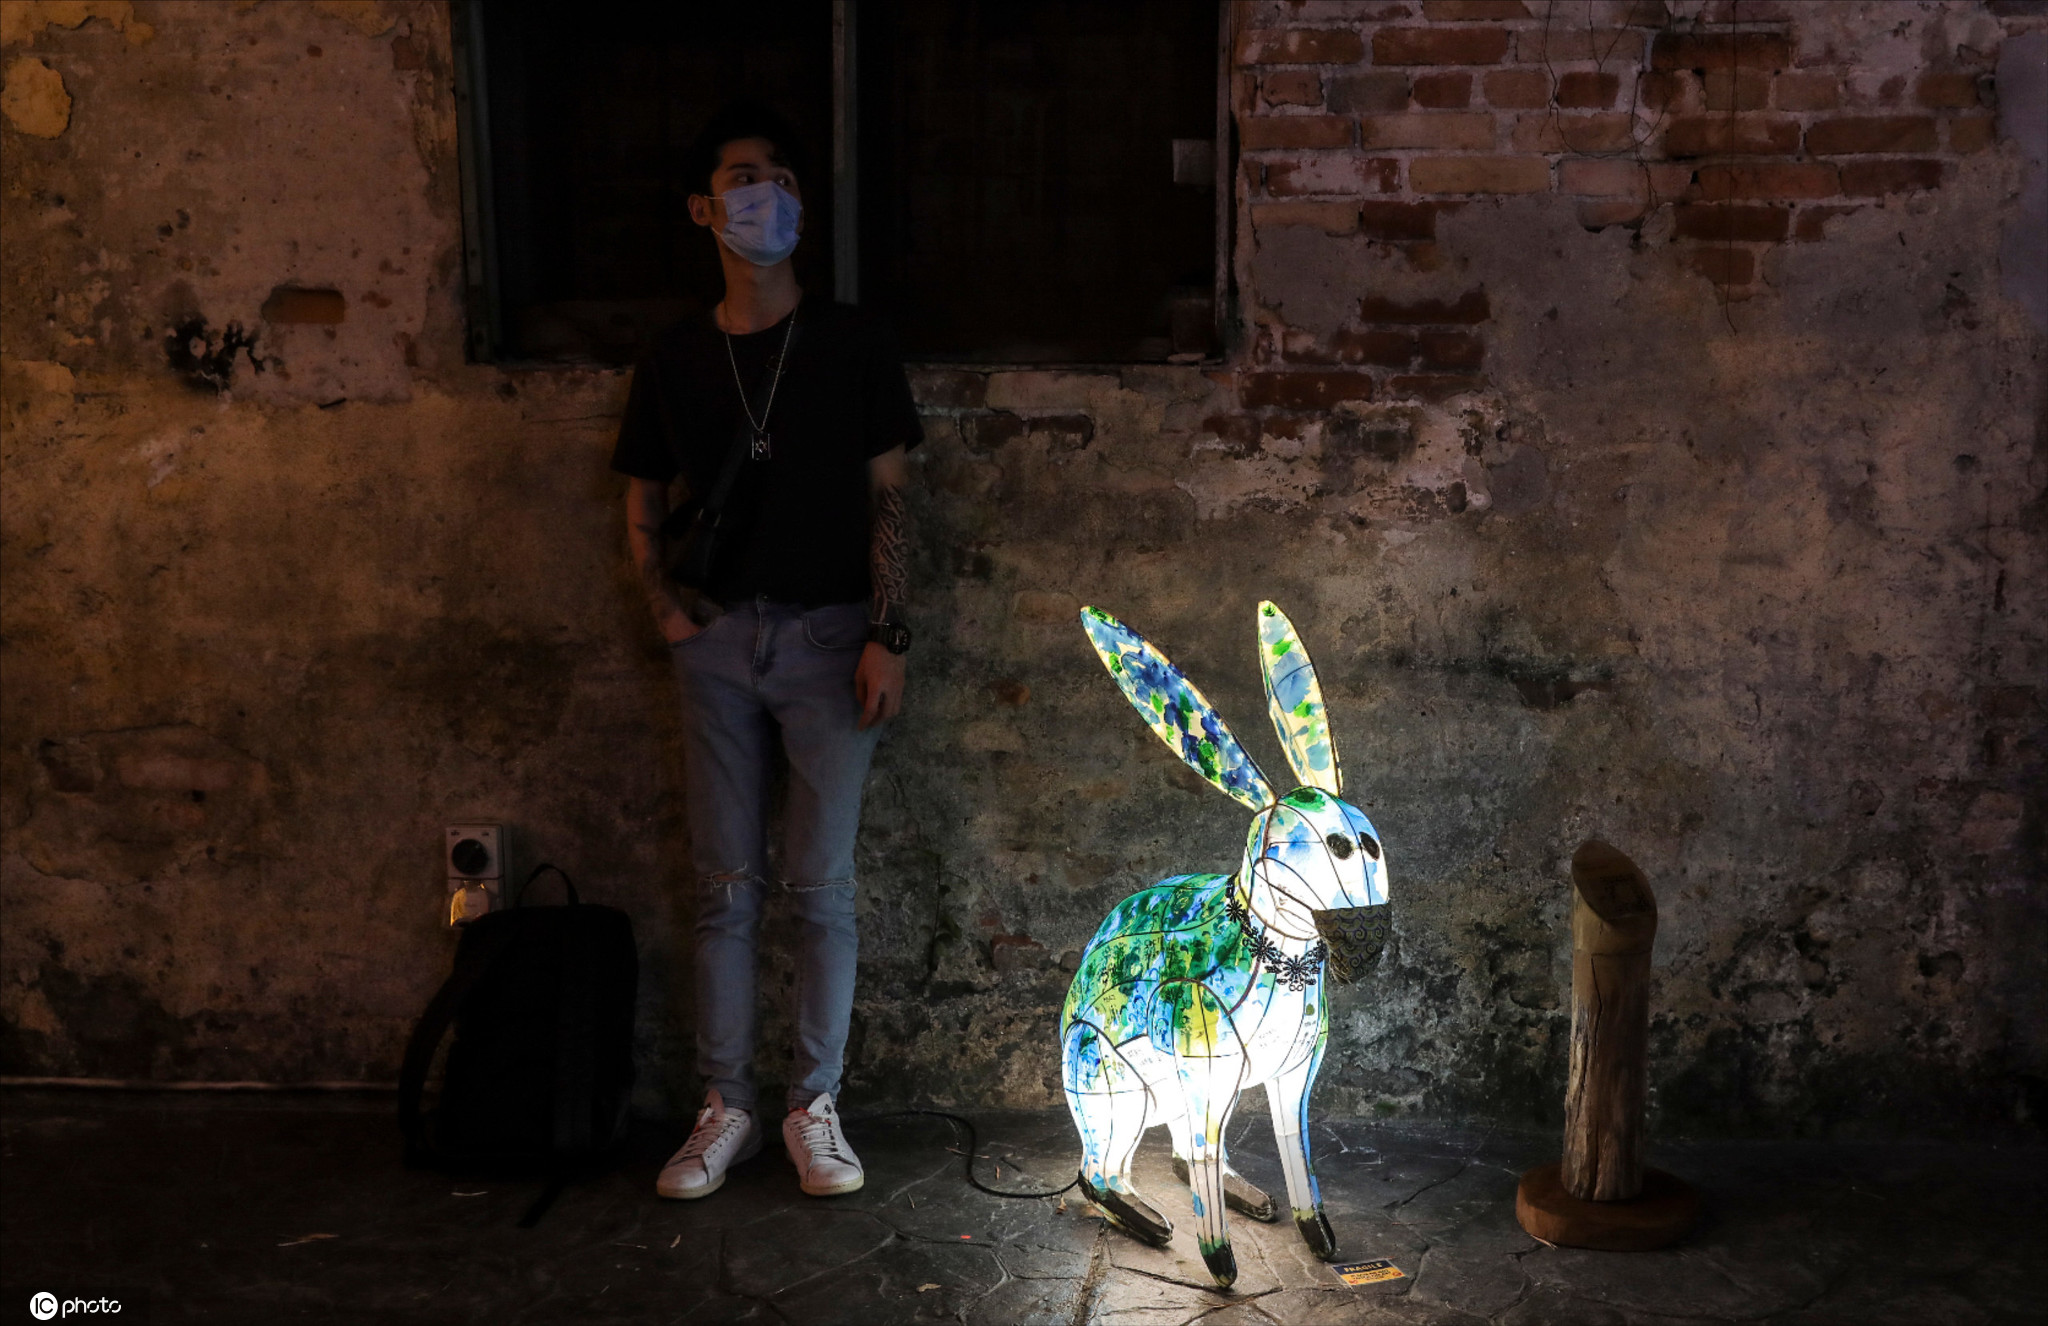 馬來西亞慶祝中秋 街頭巨型兔子燈吸睛-圖5